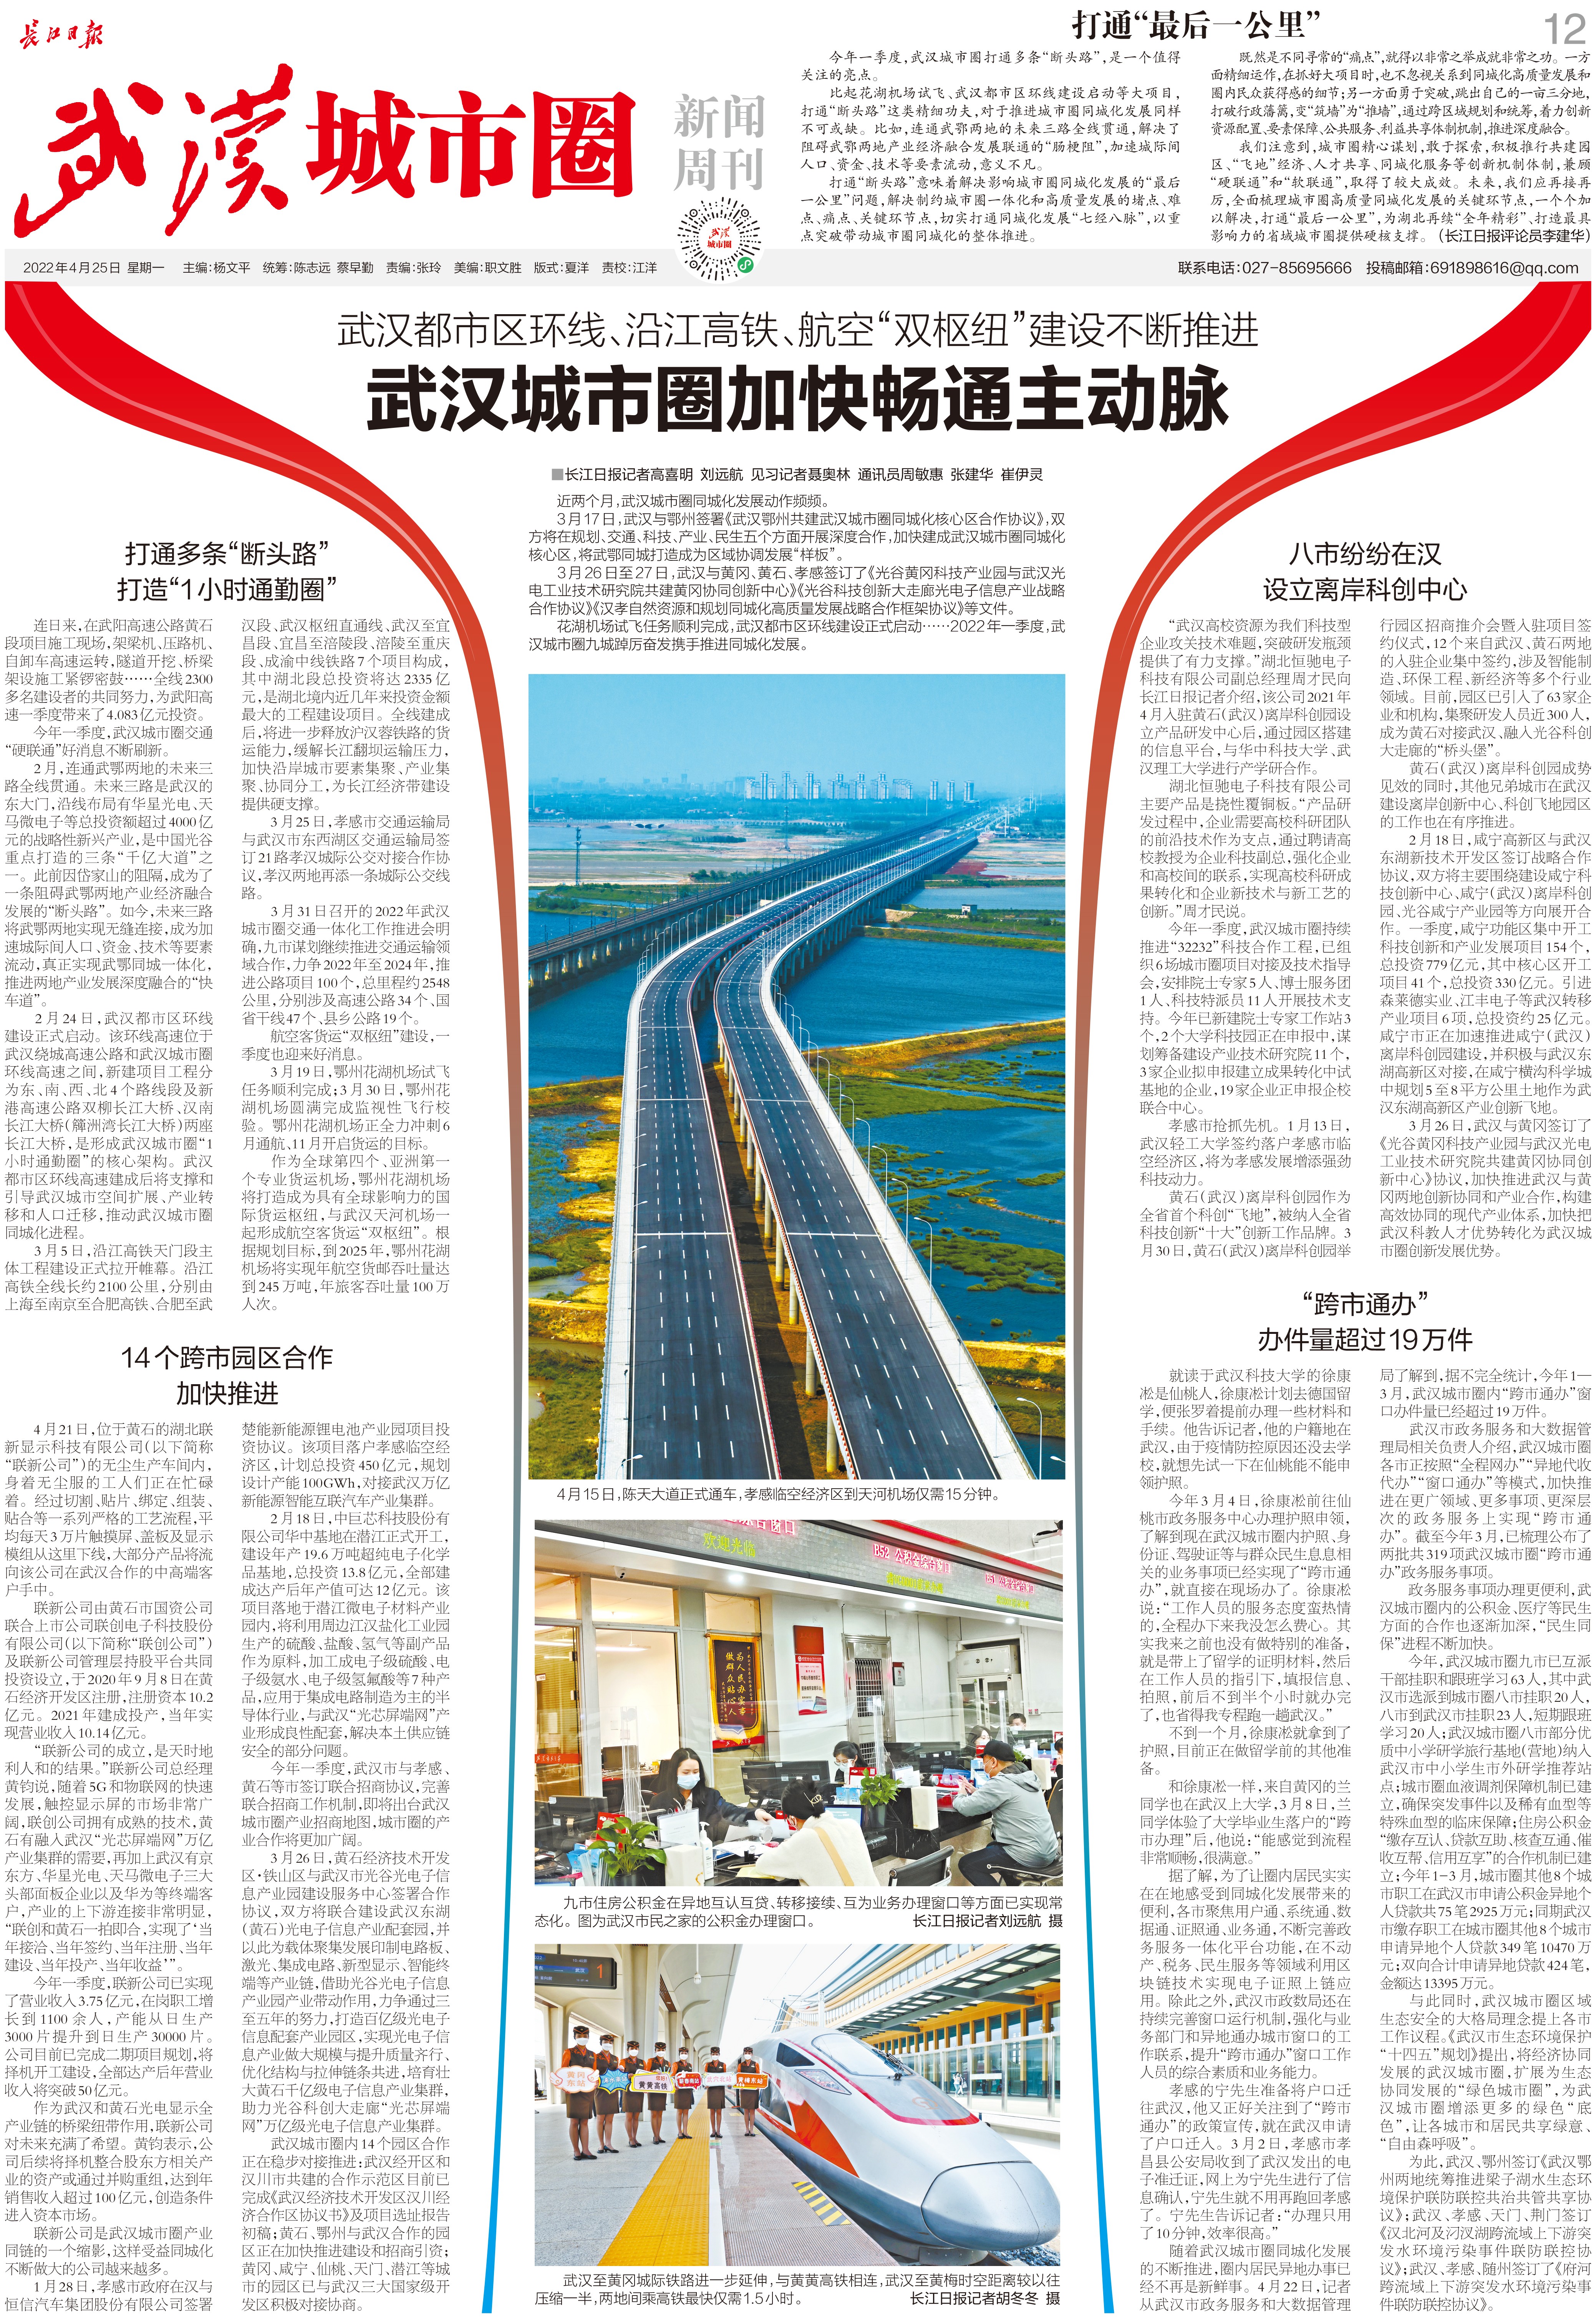 九城同心向未来长江日报武汉城市圈新闻周刊2022年4月25日第11期报纸